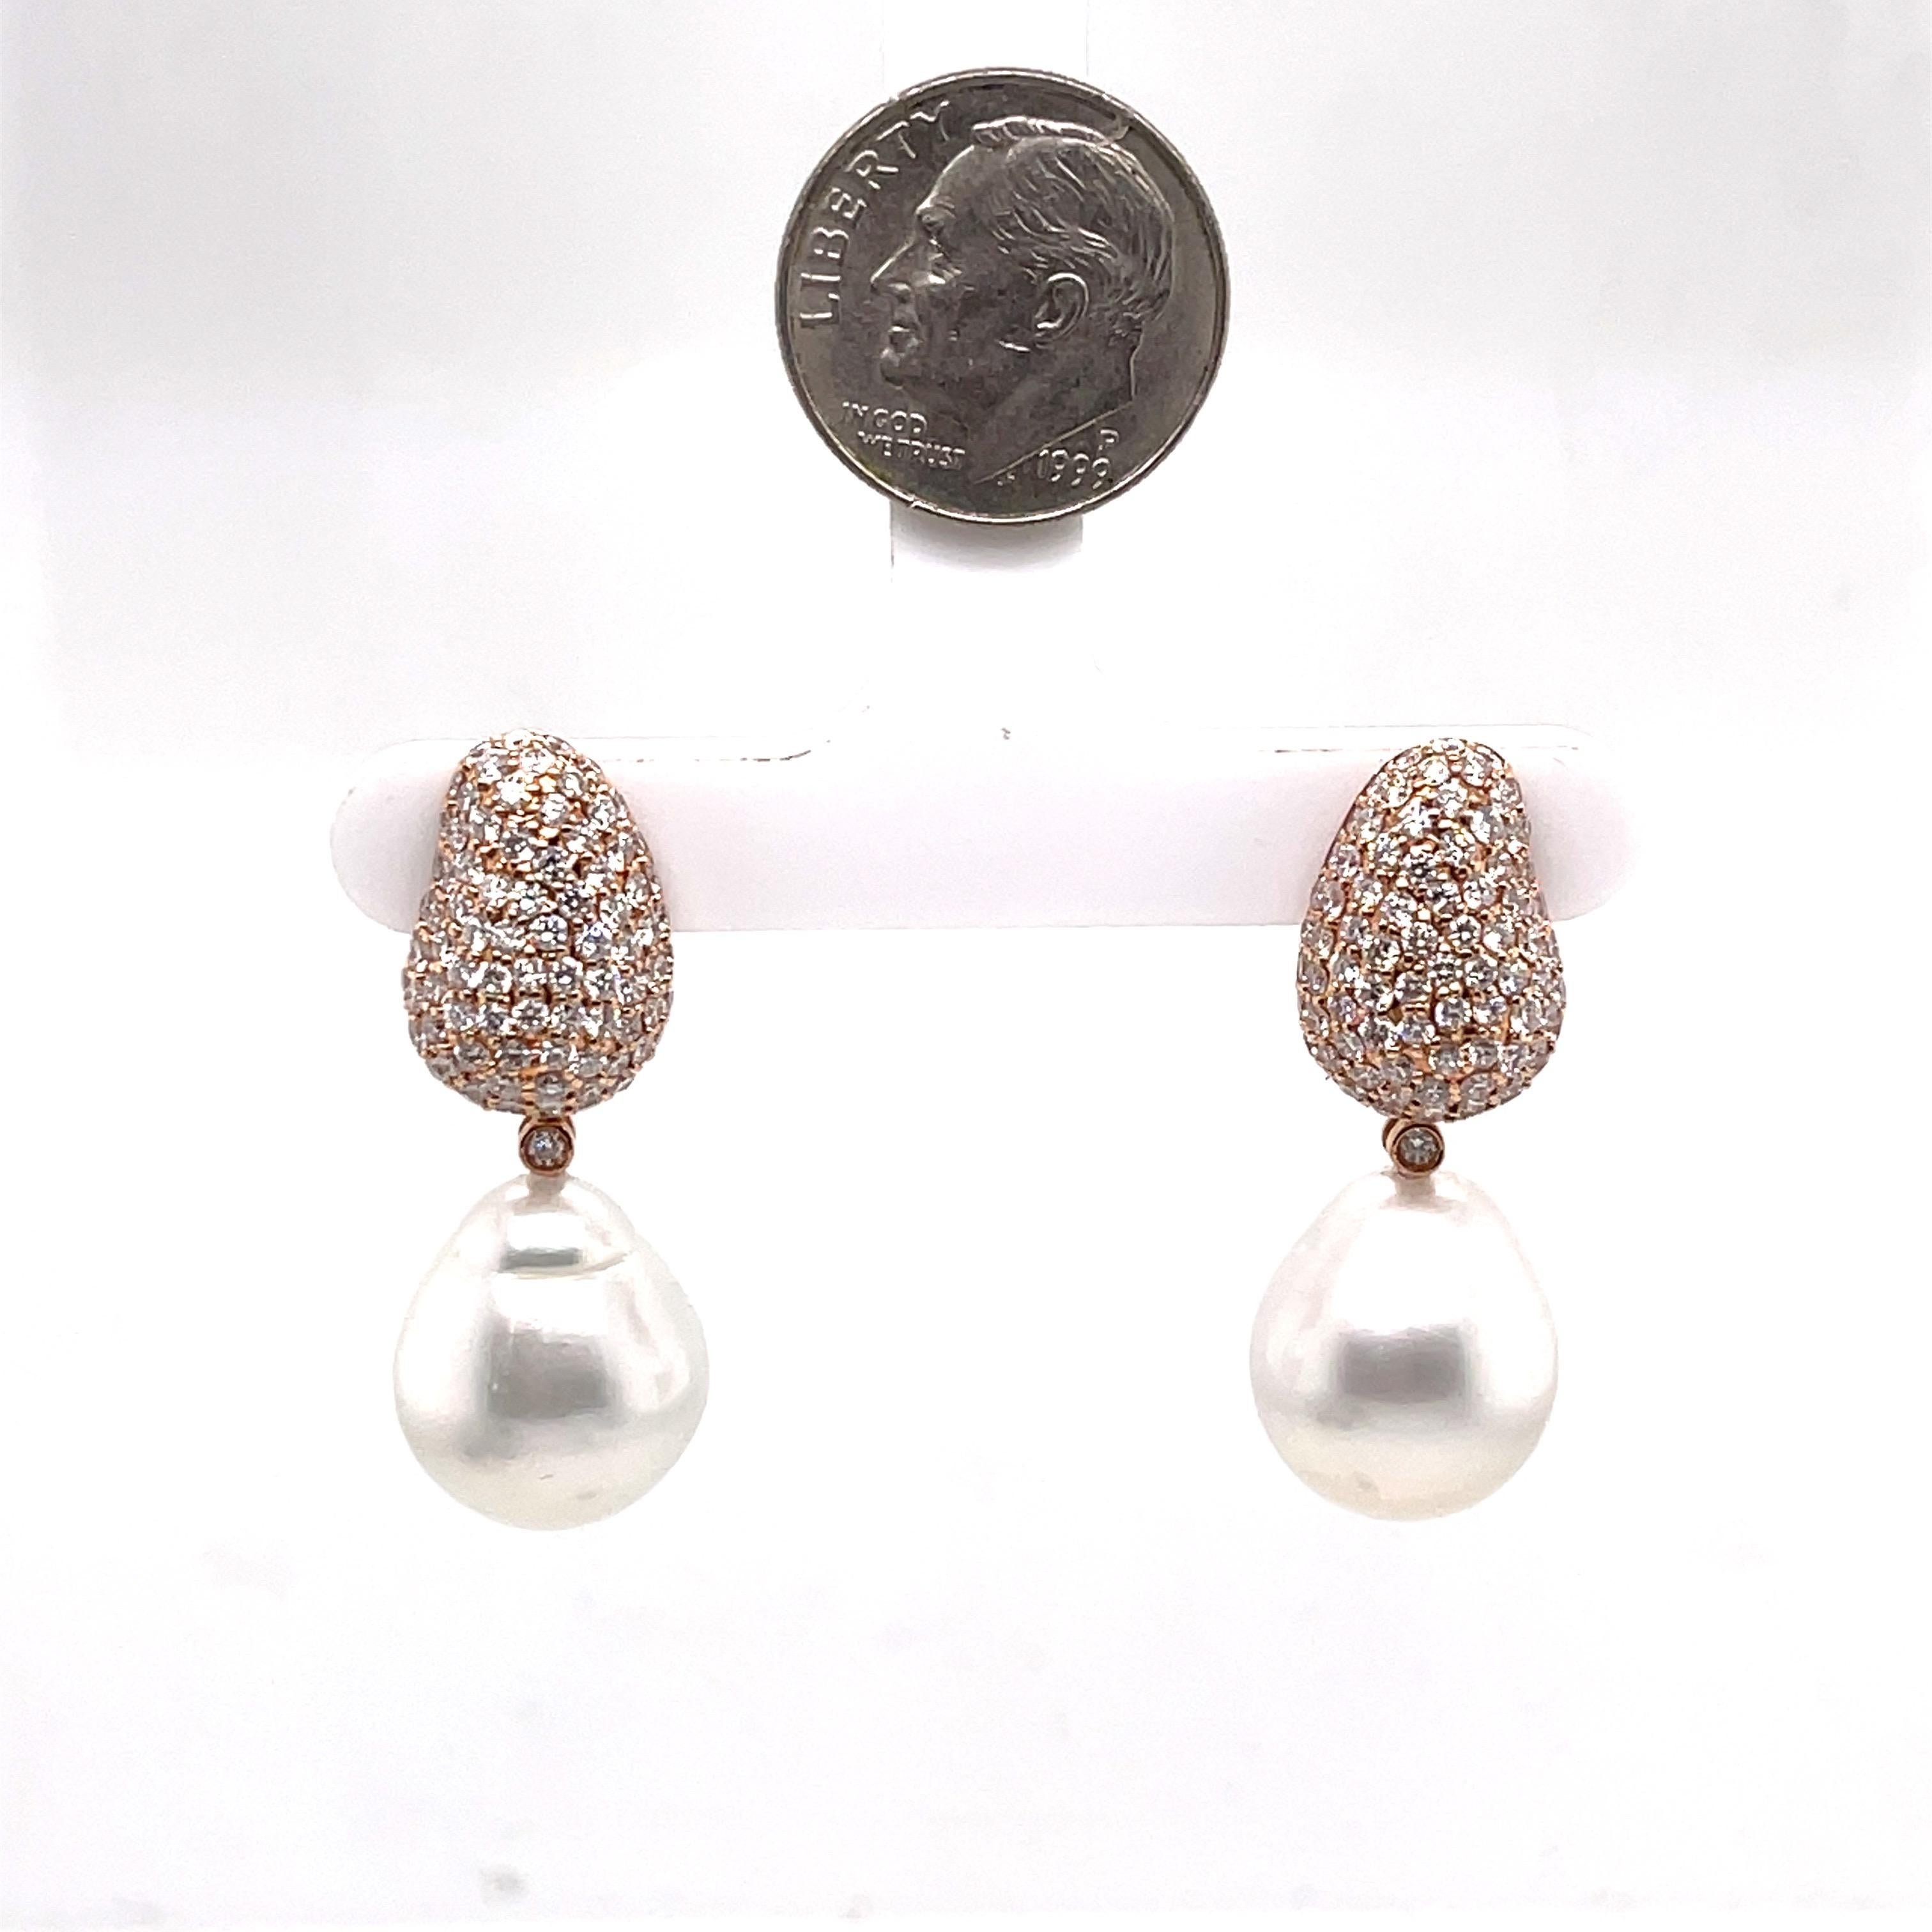 Peut être porté comme une boucle d'oreille ou un clou de diamant.
La perle est détachable.
or rose 18K 
2.5ct Diamonds
perle 13-14mm
Mesures sans les attaches de perles : 16mm de longueur 11.2 de largeur